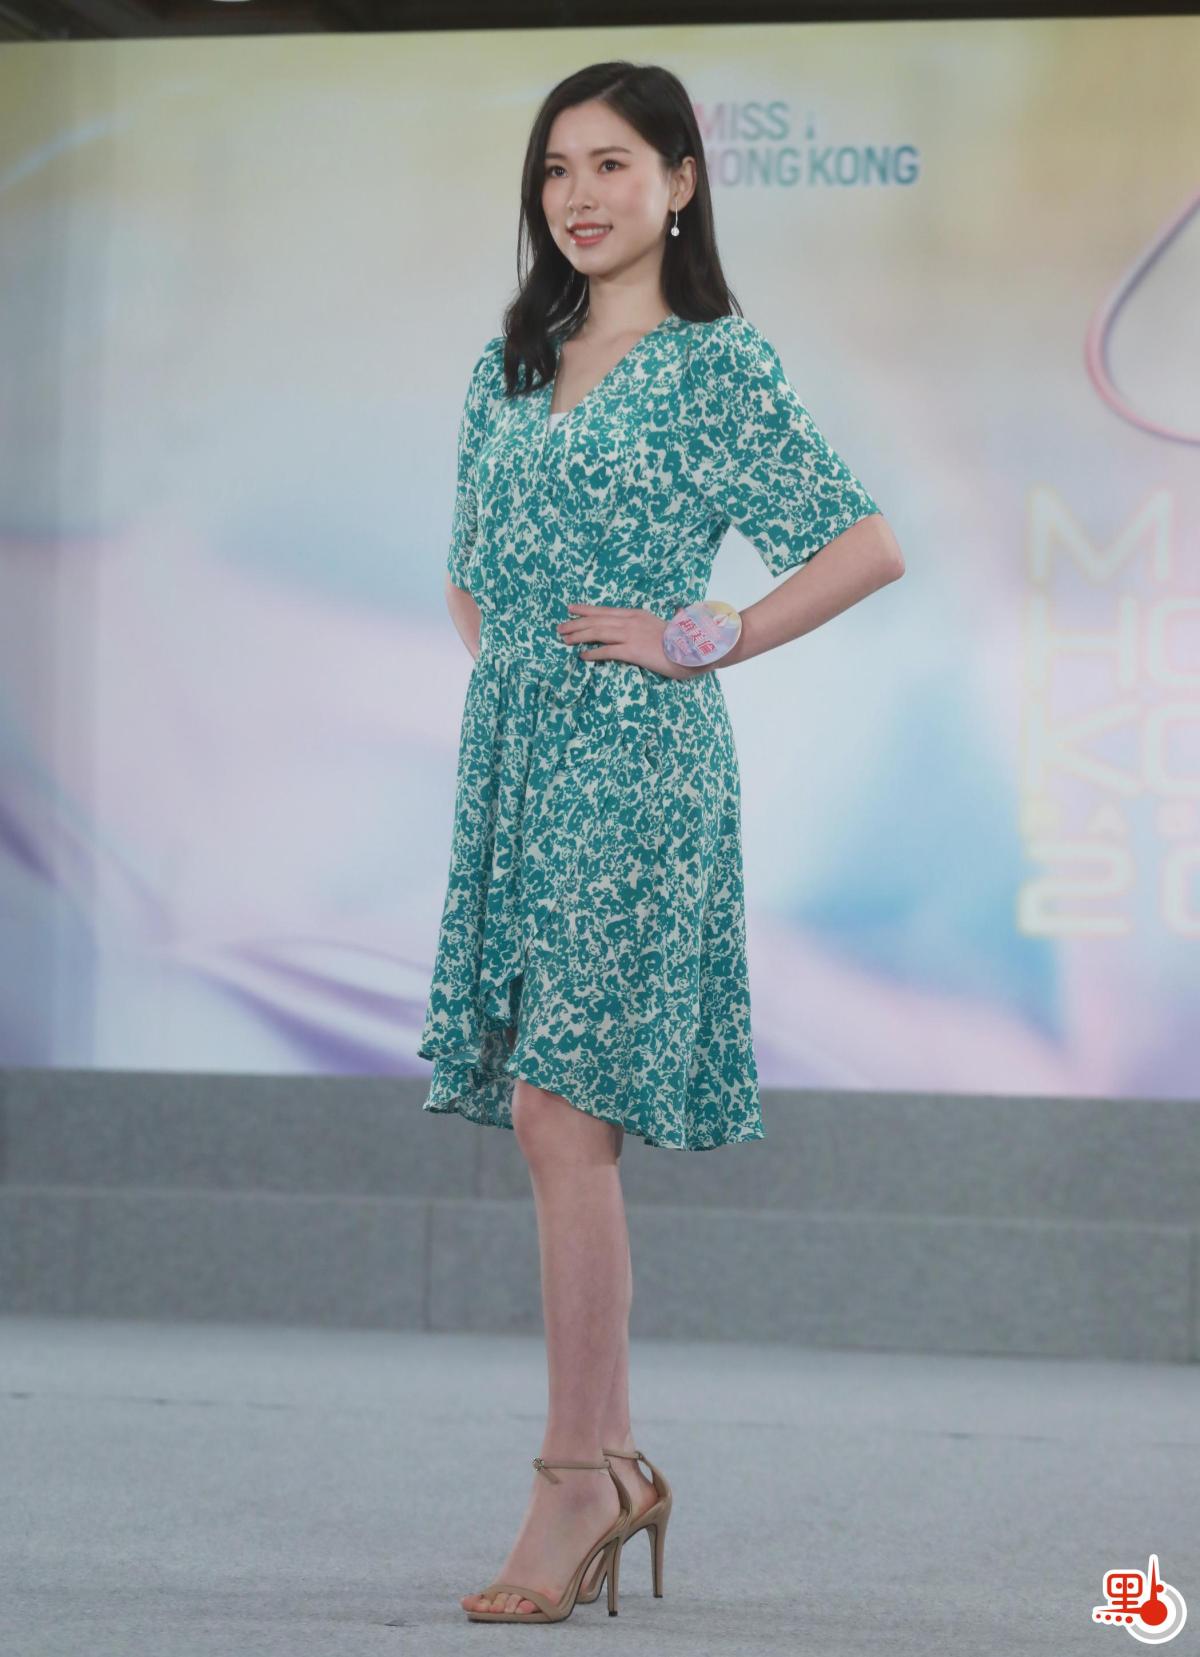 18歲趙美倫(Mona Zhao)，是一名學生，身高168cm，志向是成為一位善良樂觀、積極努力、不停進步的人。她和同樣18歲的施茉莉亦是最年輕的入圍者。（點新聞記者攝）